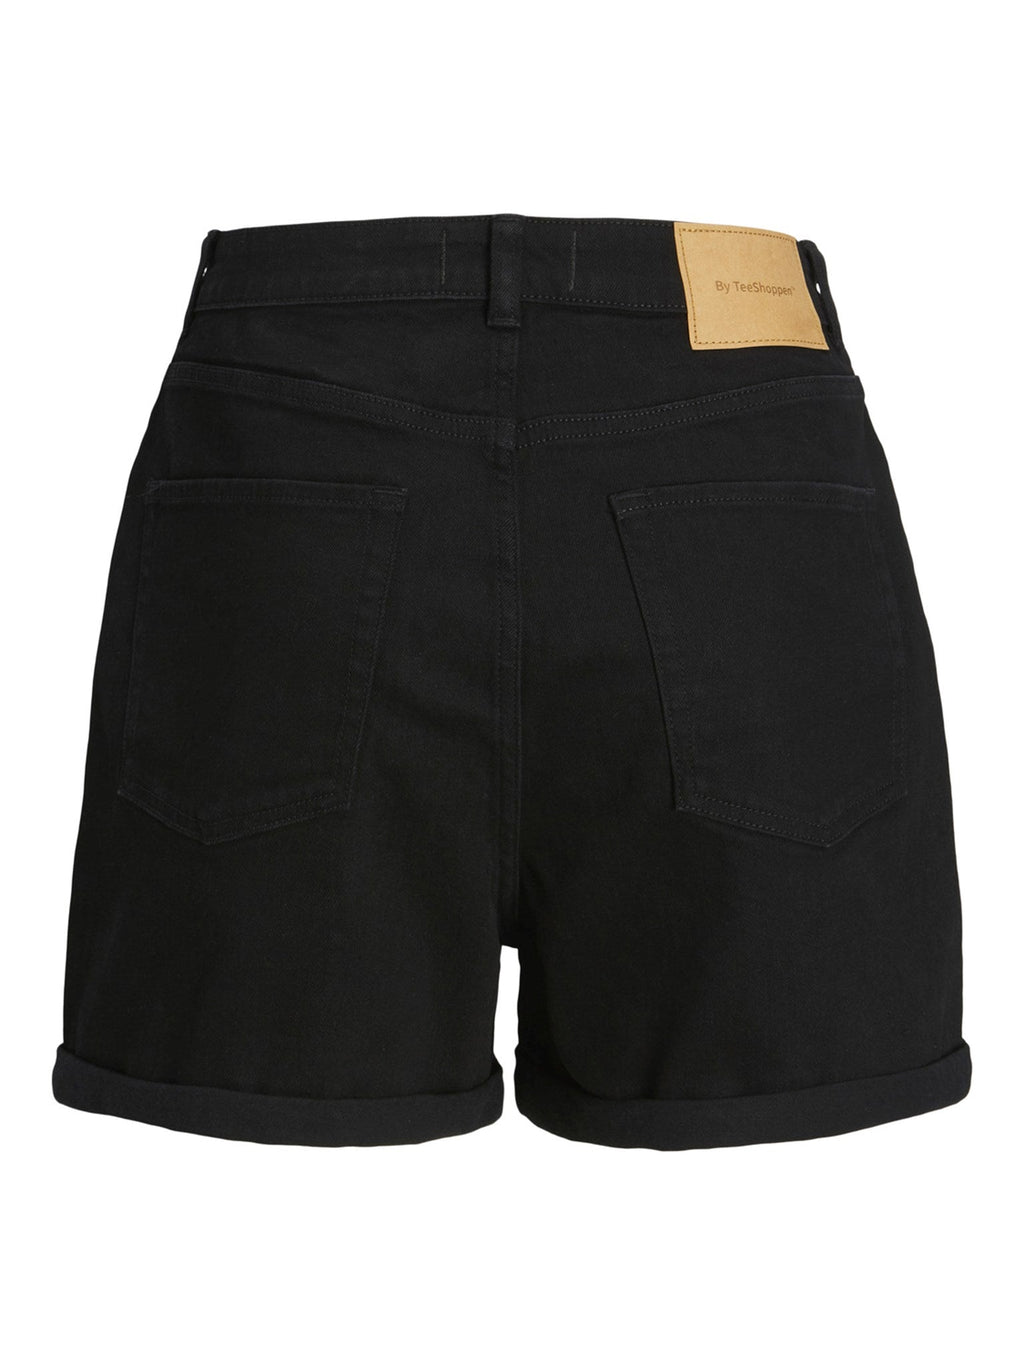 Le shorts de jean de performance originaux - Denim noir